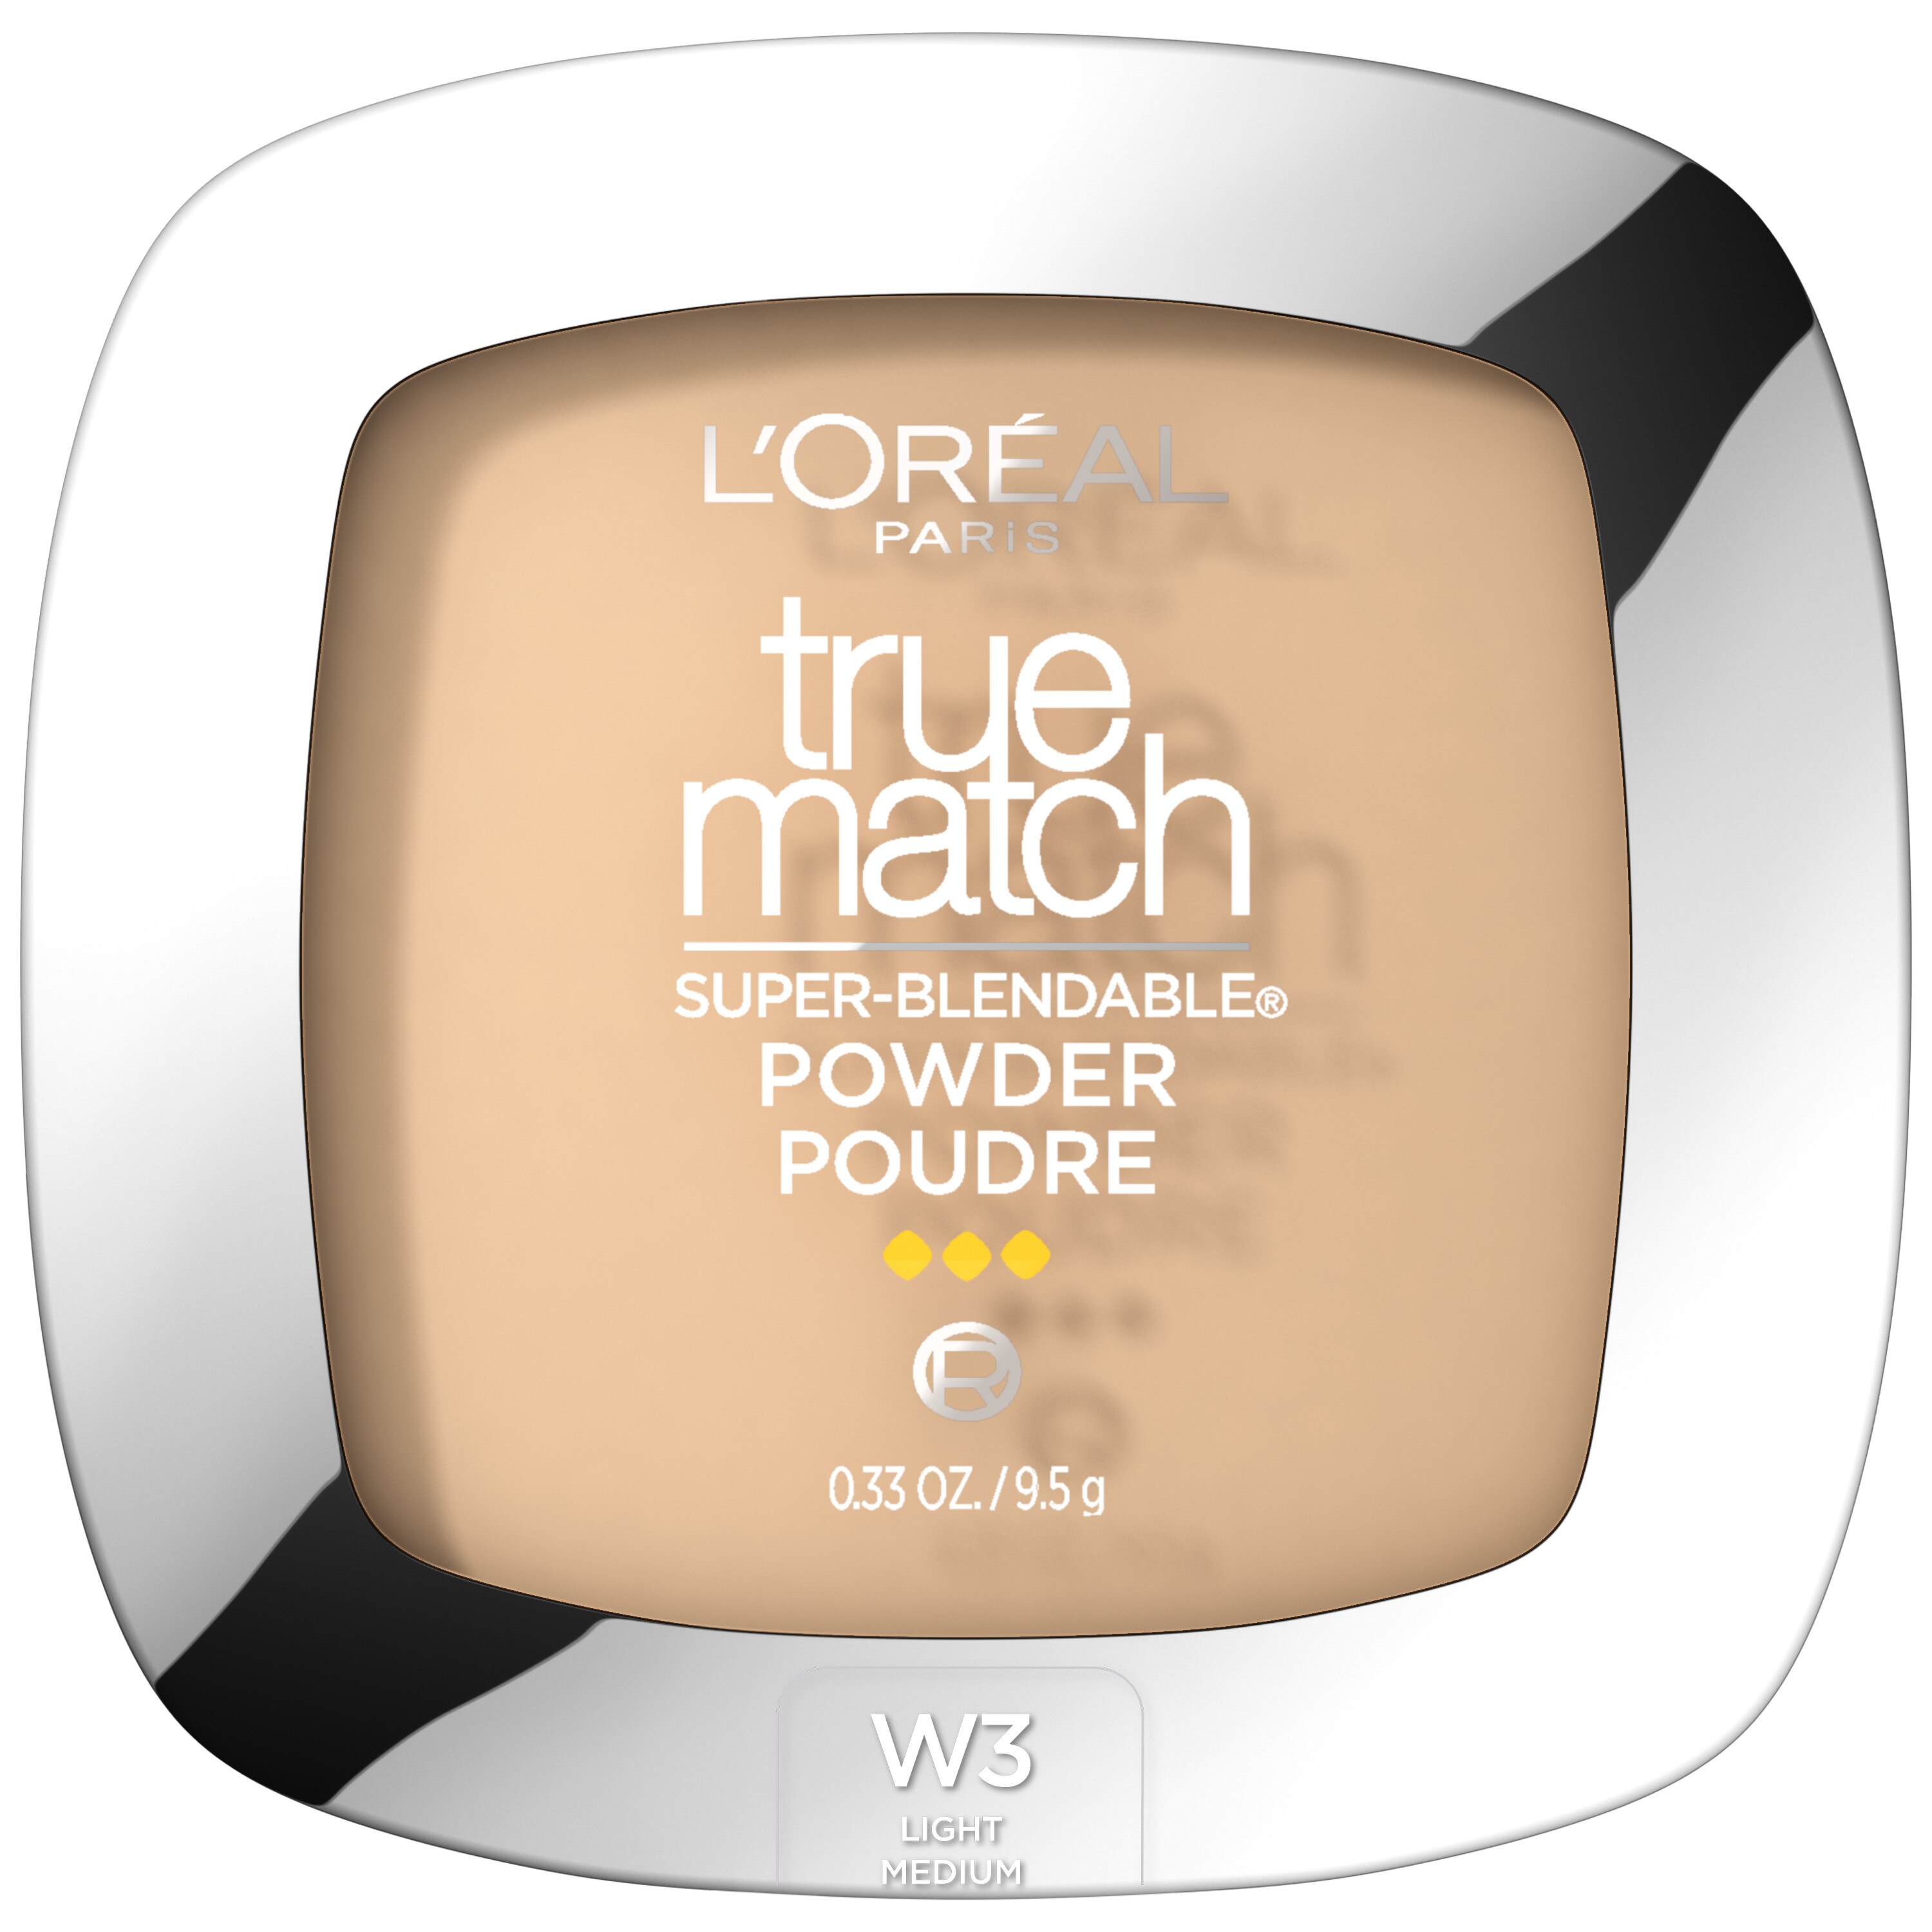 L'Oreal Paris True Match Super Blendable Powder, W3 Nude Beige , CVS